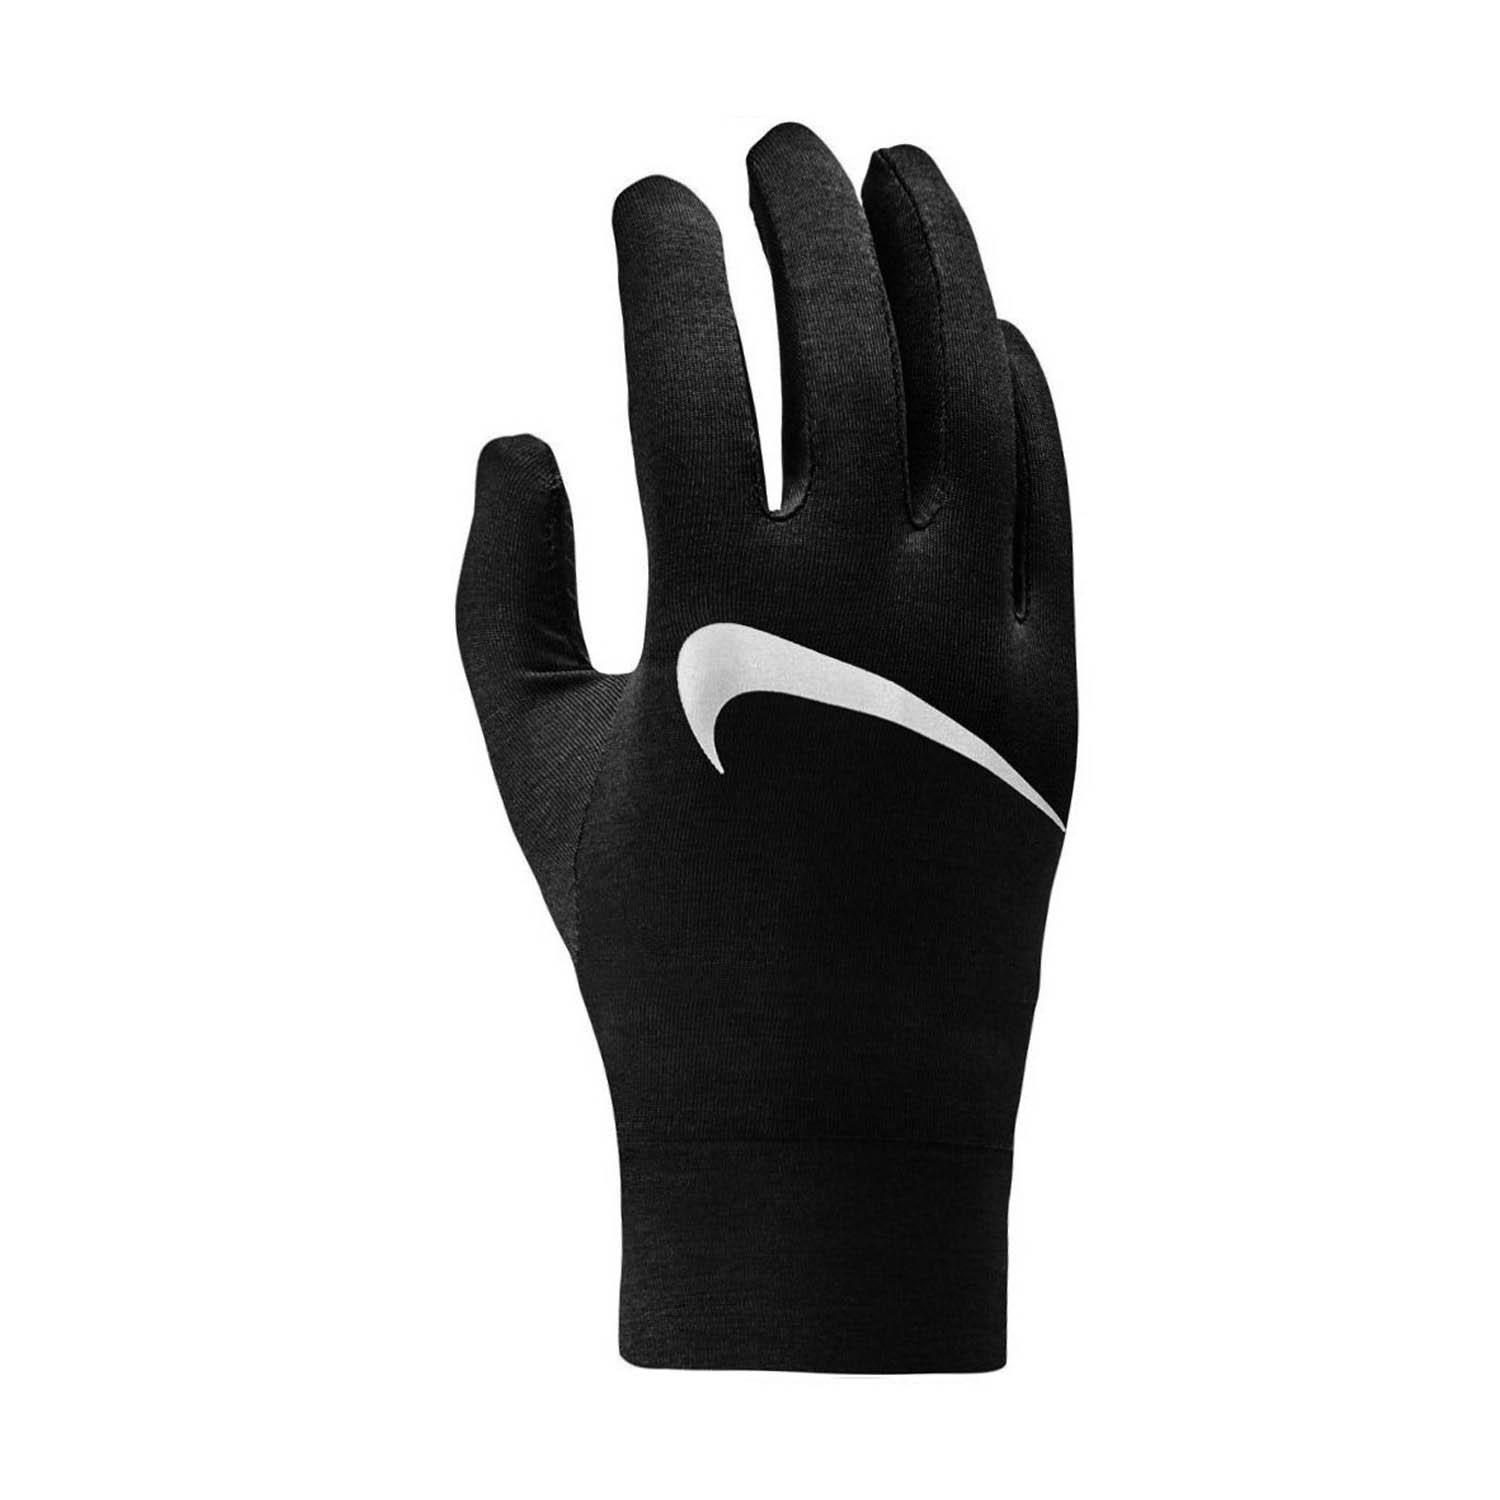 Nike Dry Element Men's Running Gloves - Black/Silver